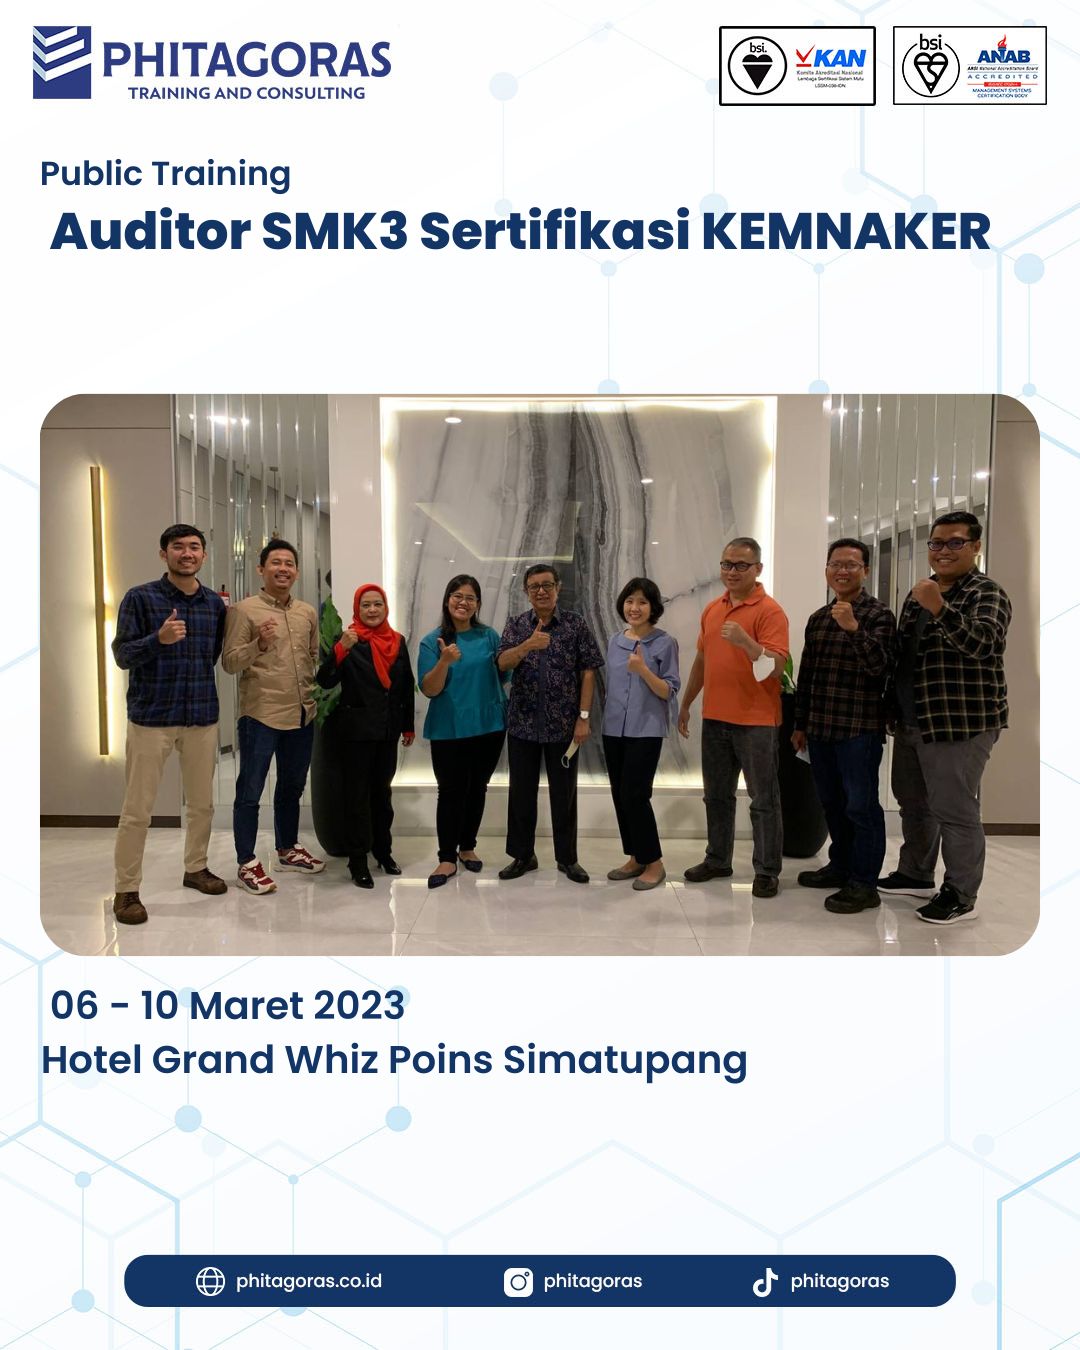 Public Training Auditor SMK3 Sertifikasi KEMNAKER - Hotel Grand Whiz Poins Simatupang